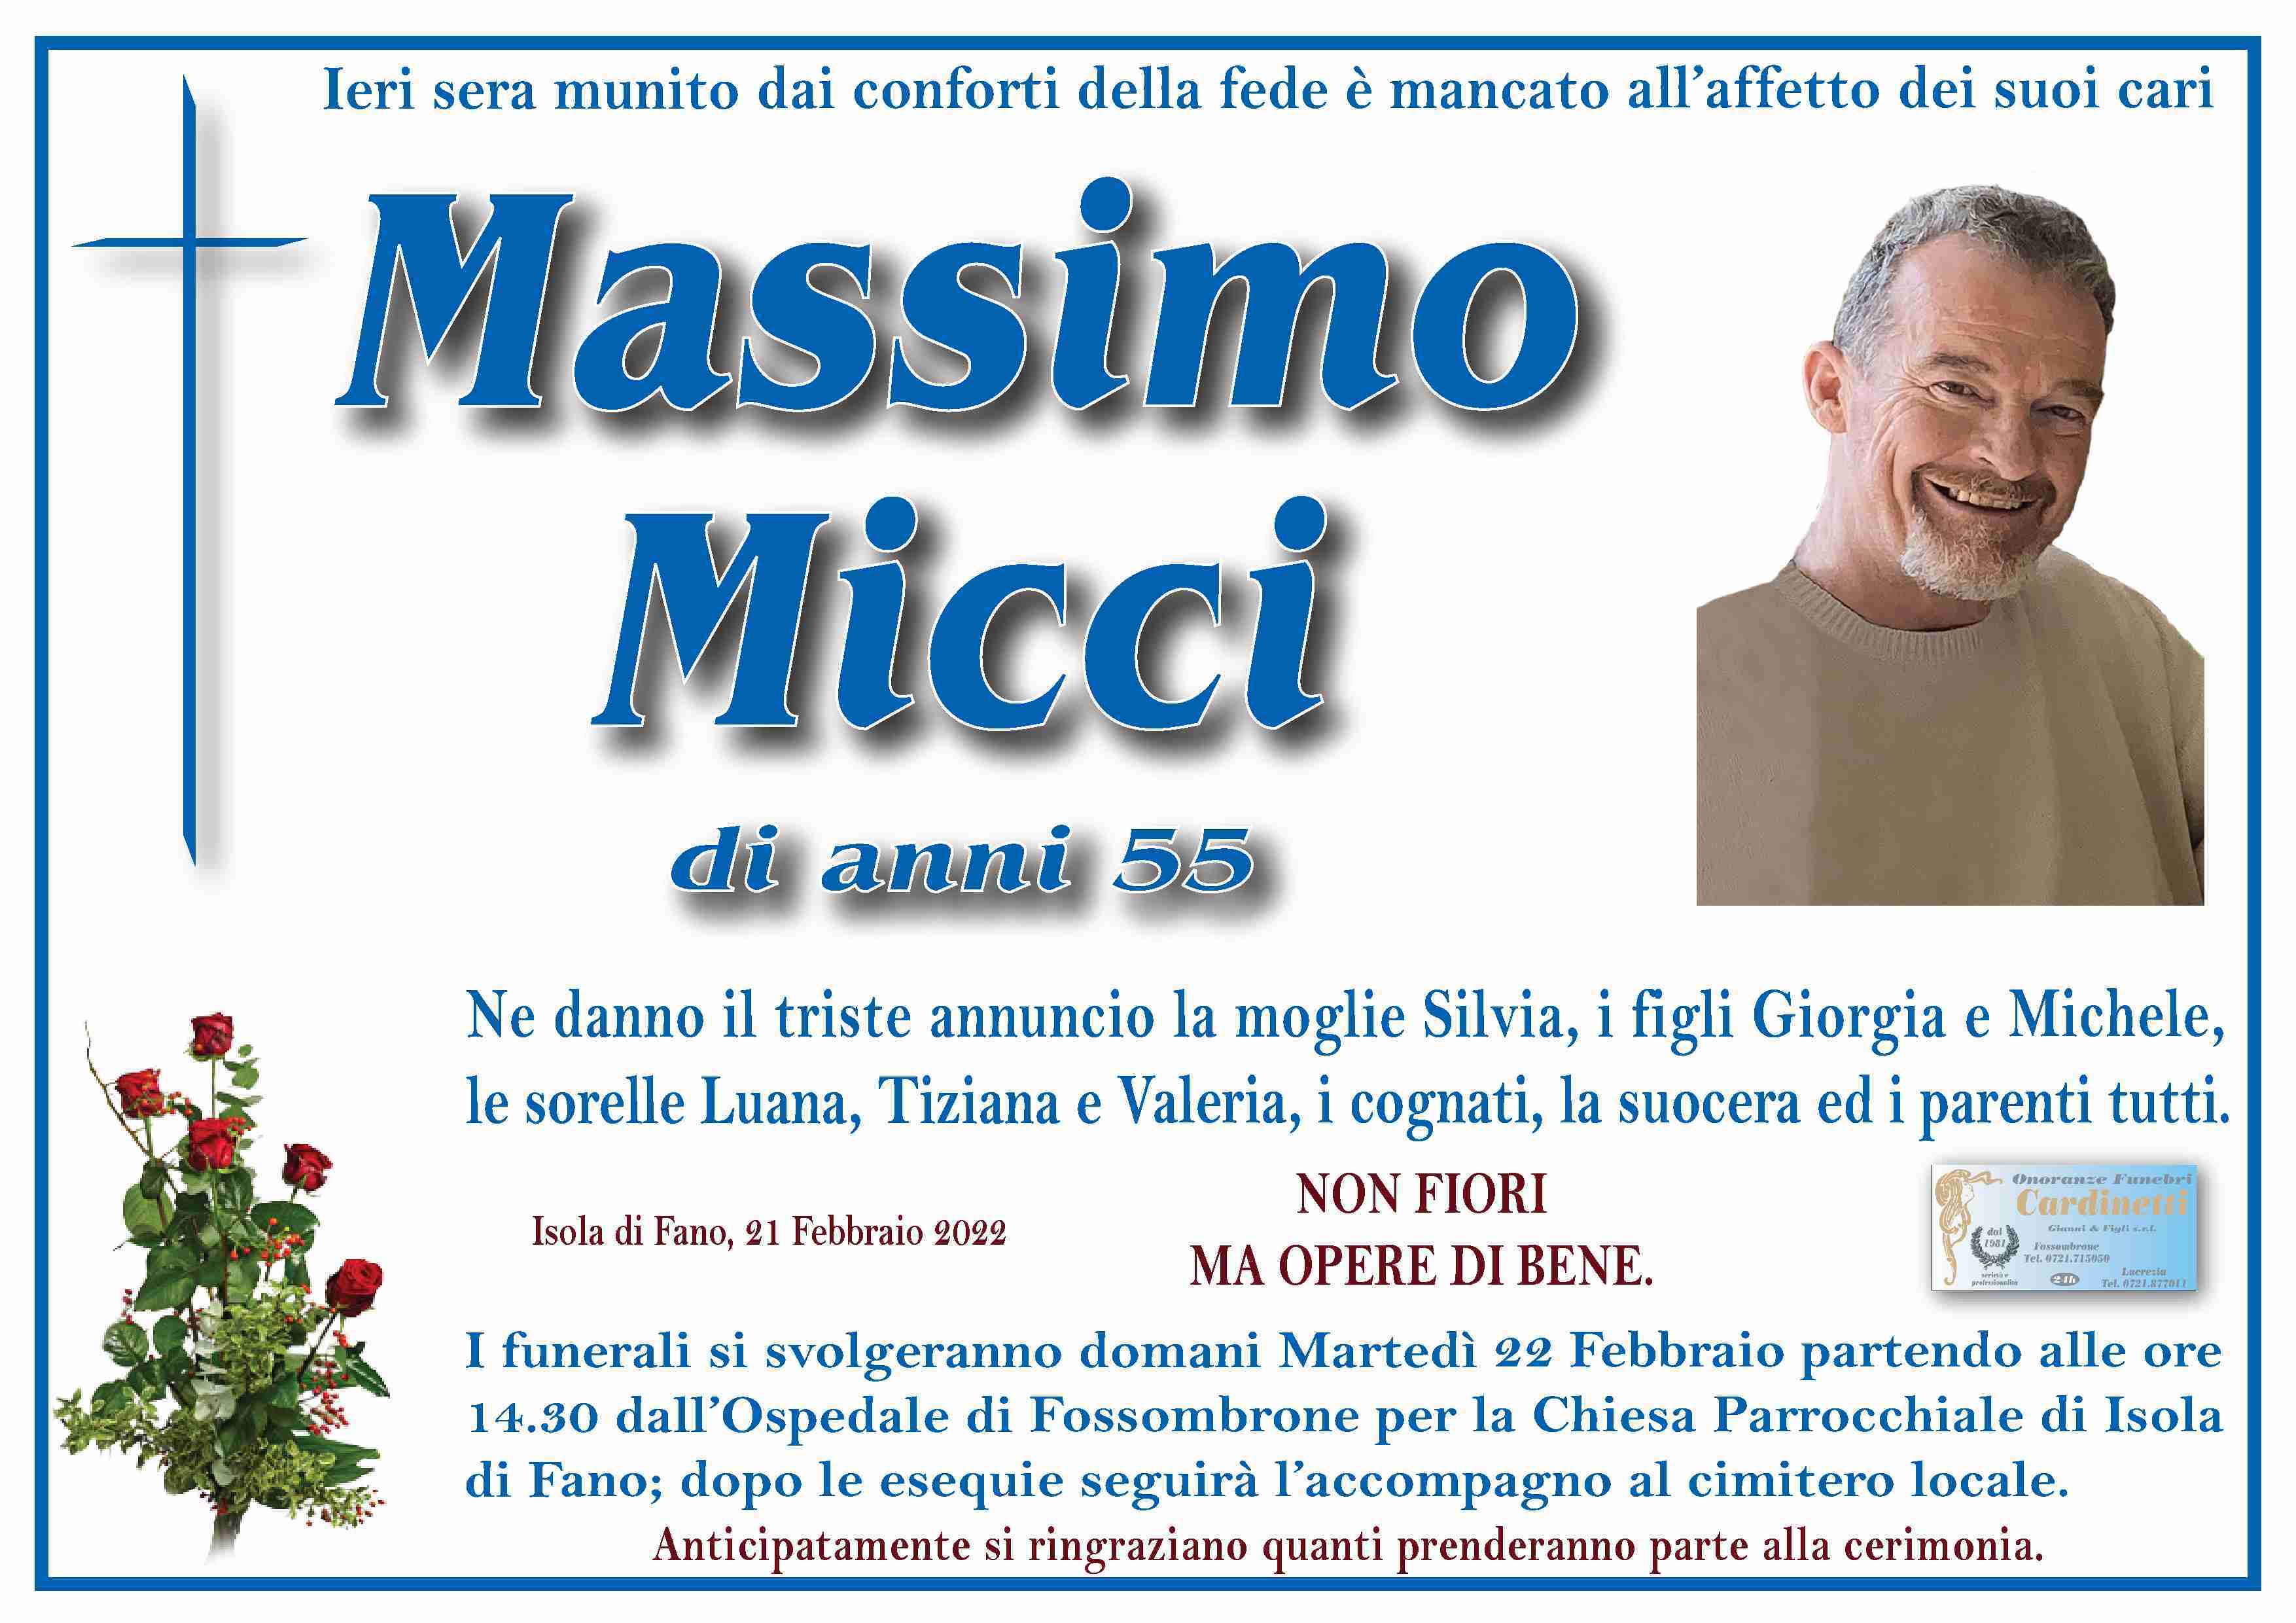 Massimo Micci